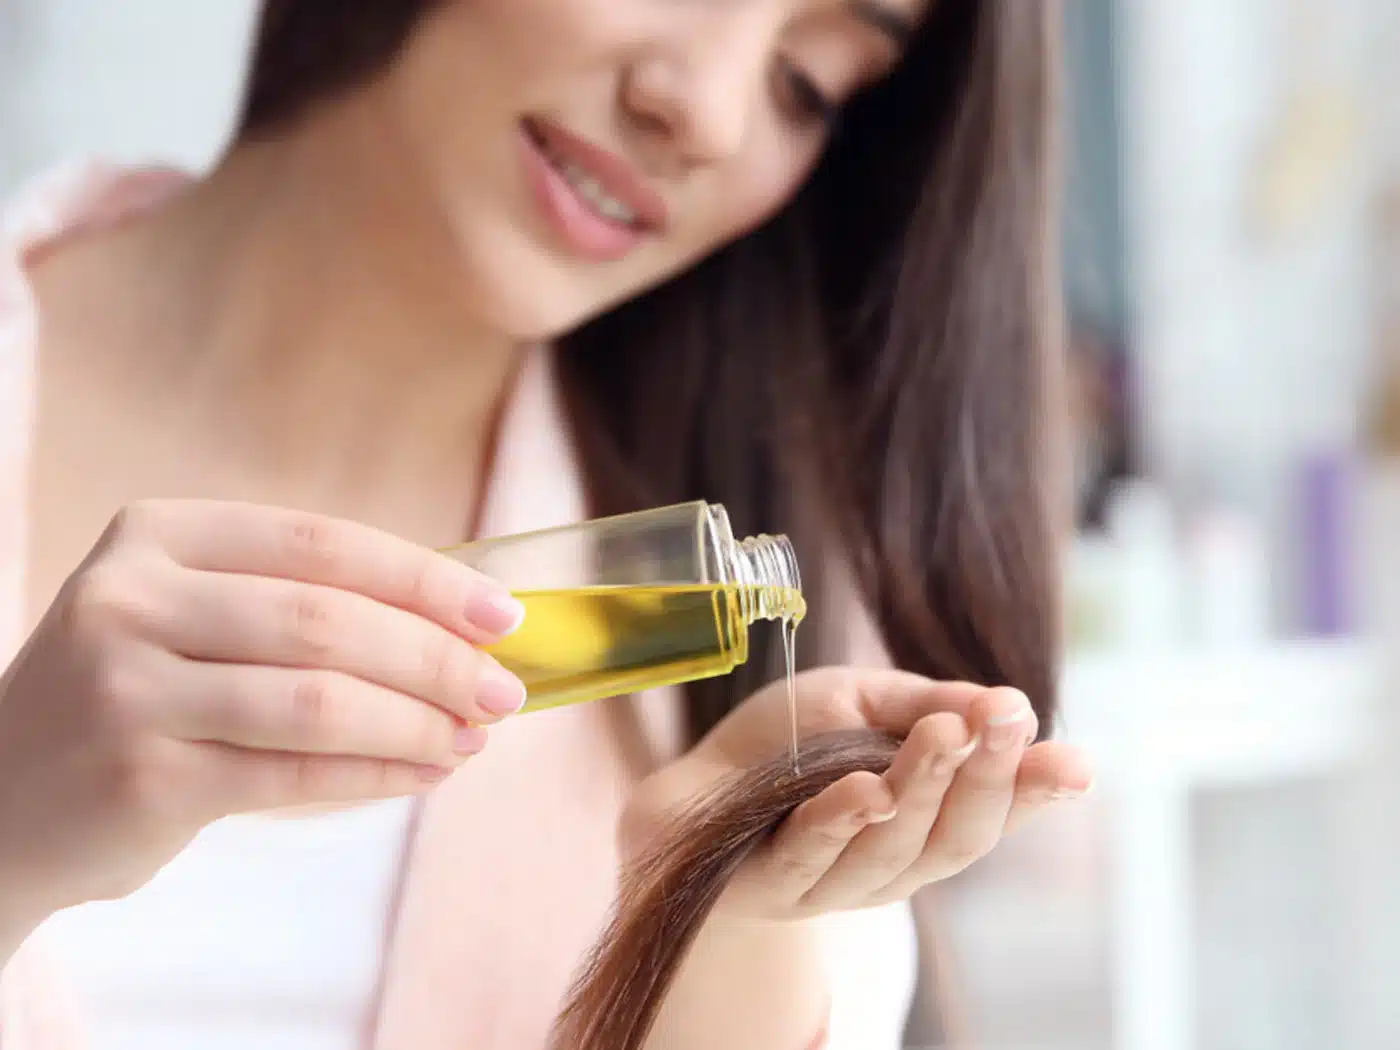 organic hair oil